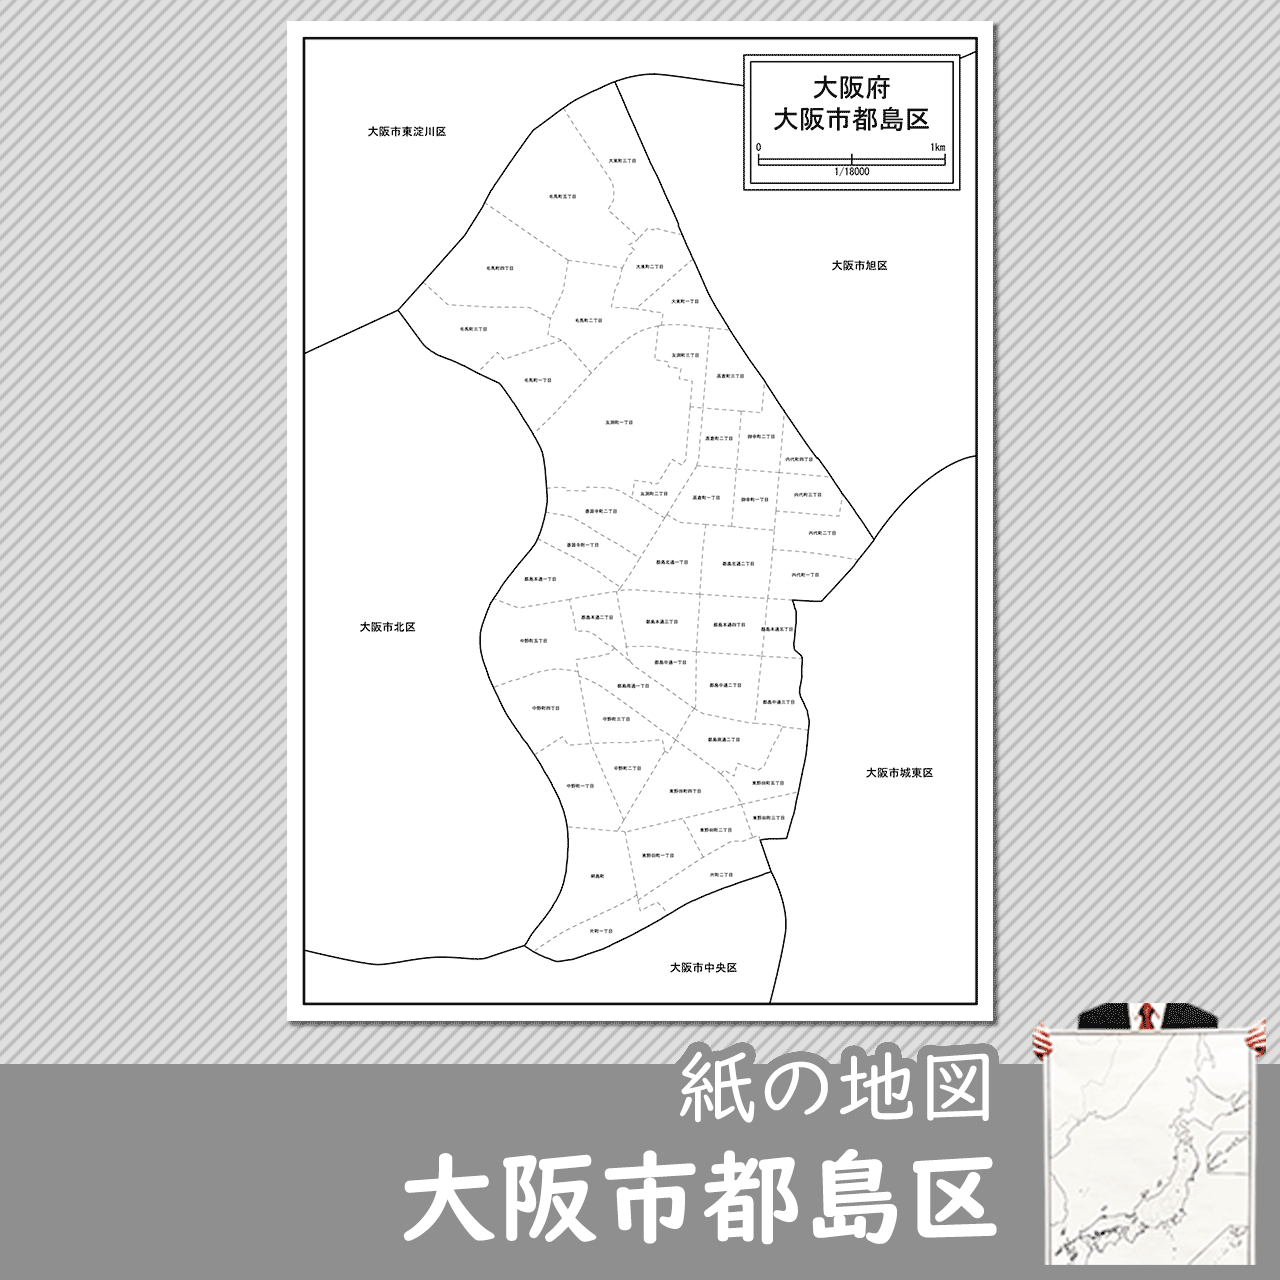 大阪市都島区の紙の白地図のサムネイル